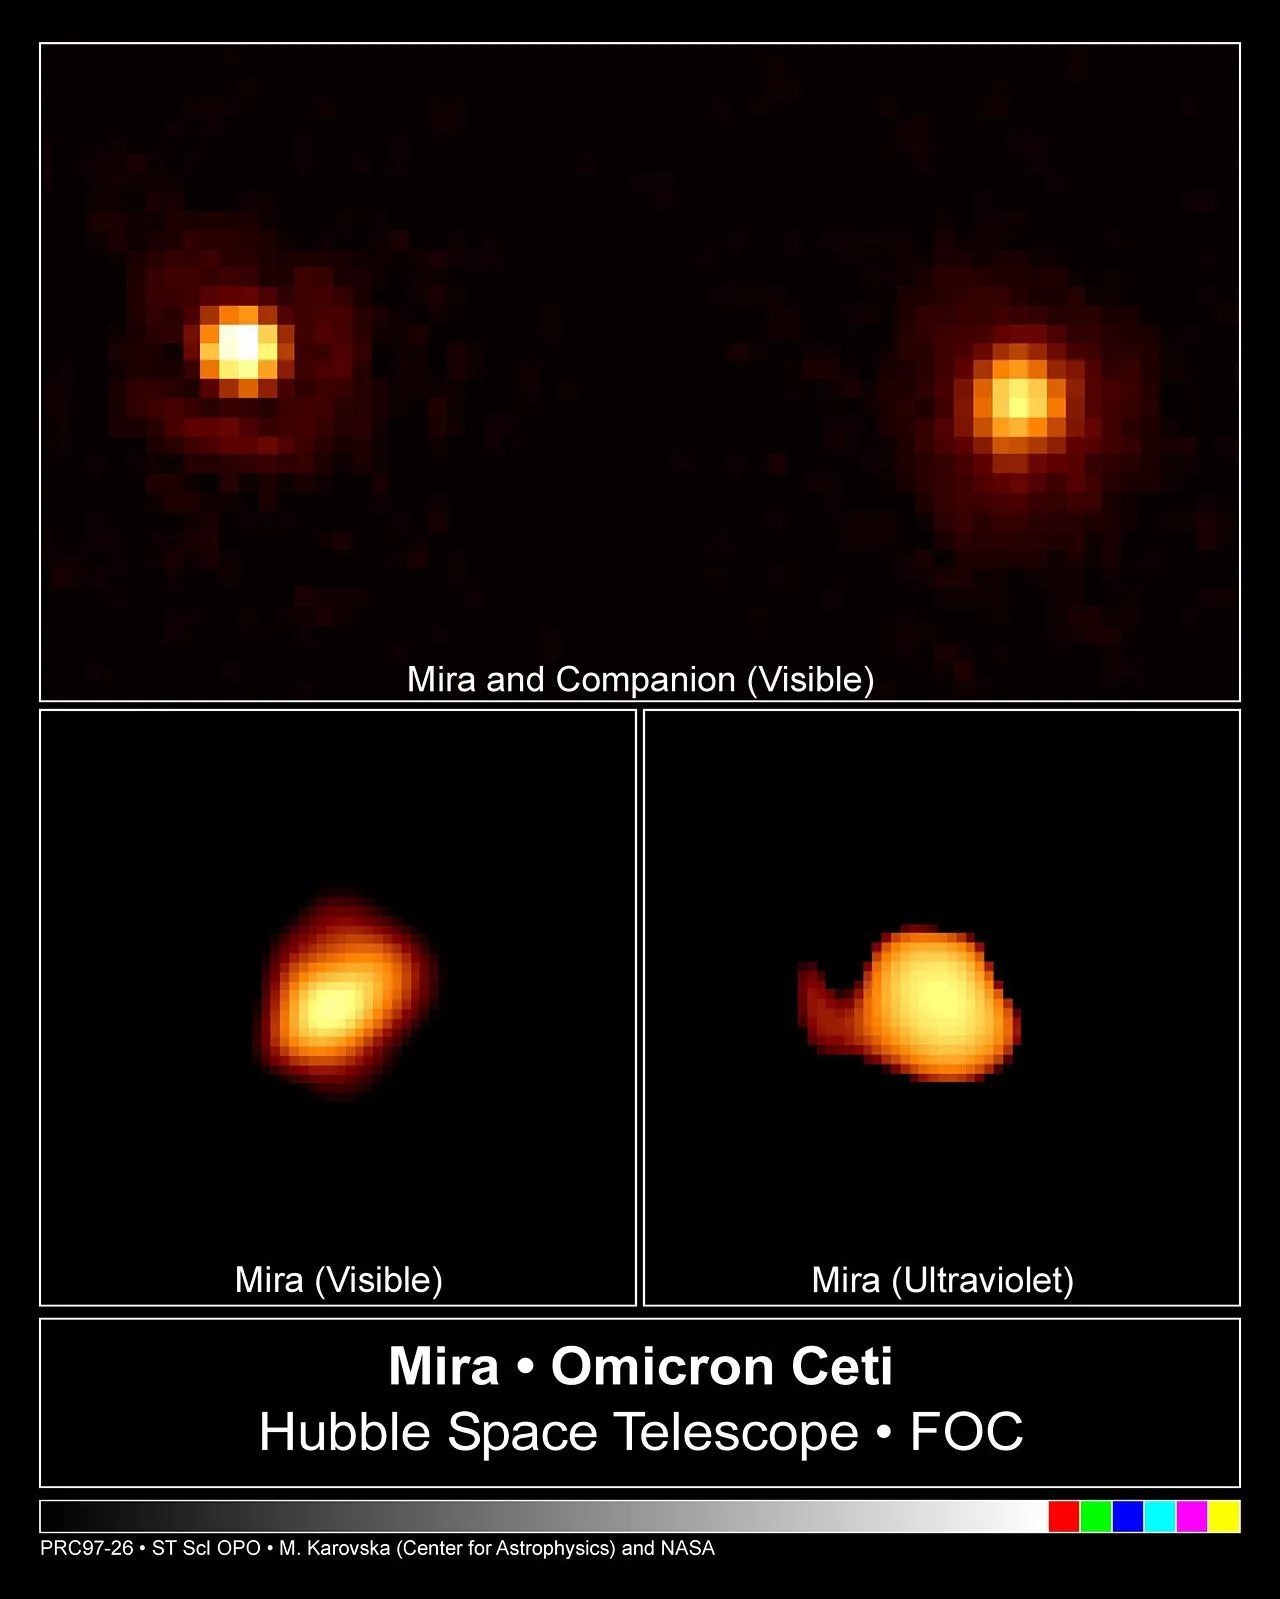 哈勃太空望远镜拍摄蒭藁增二及其伴星。